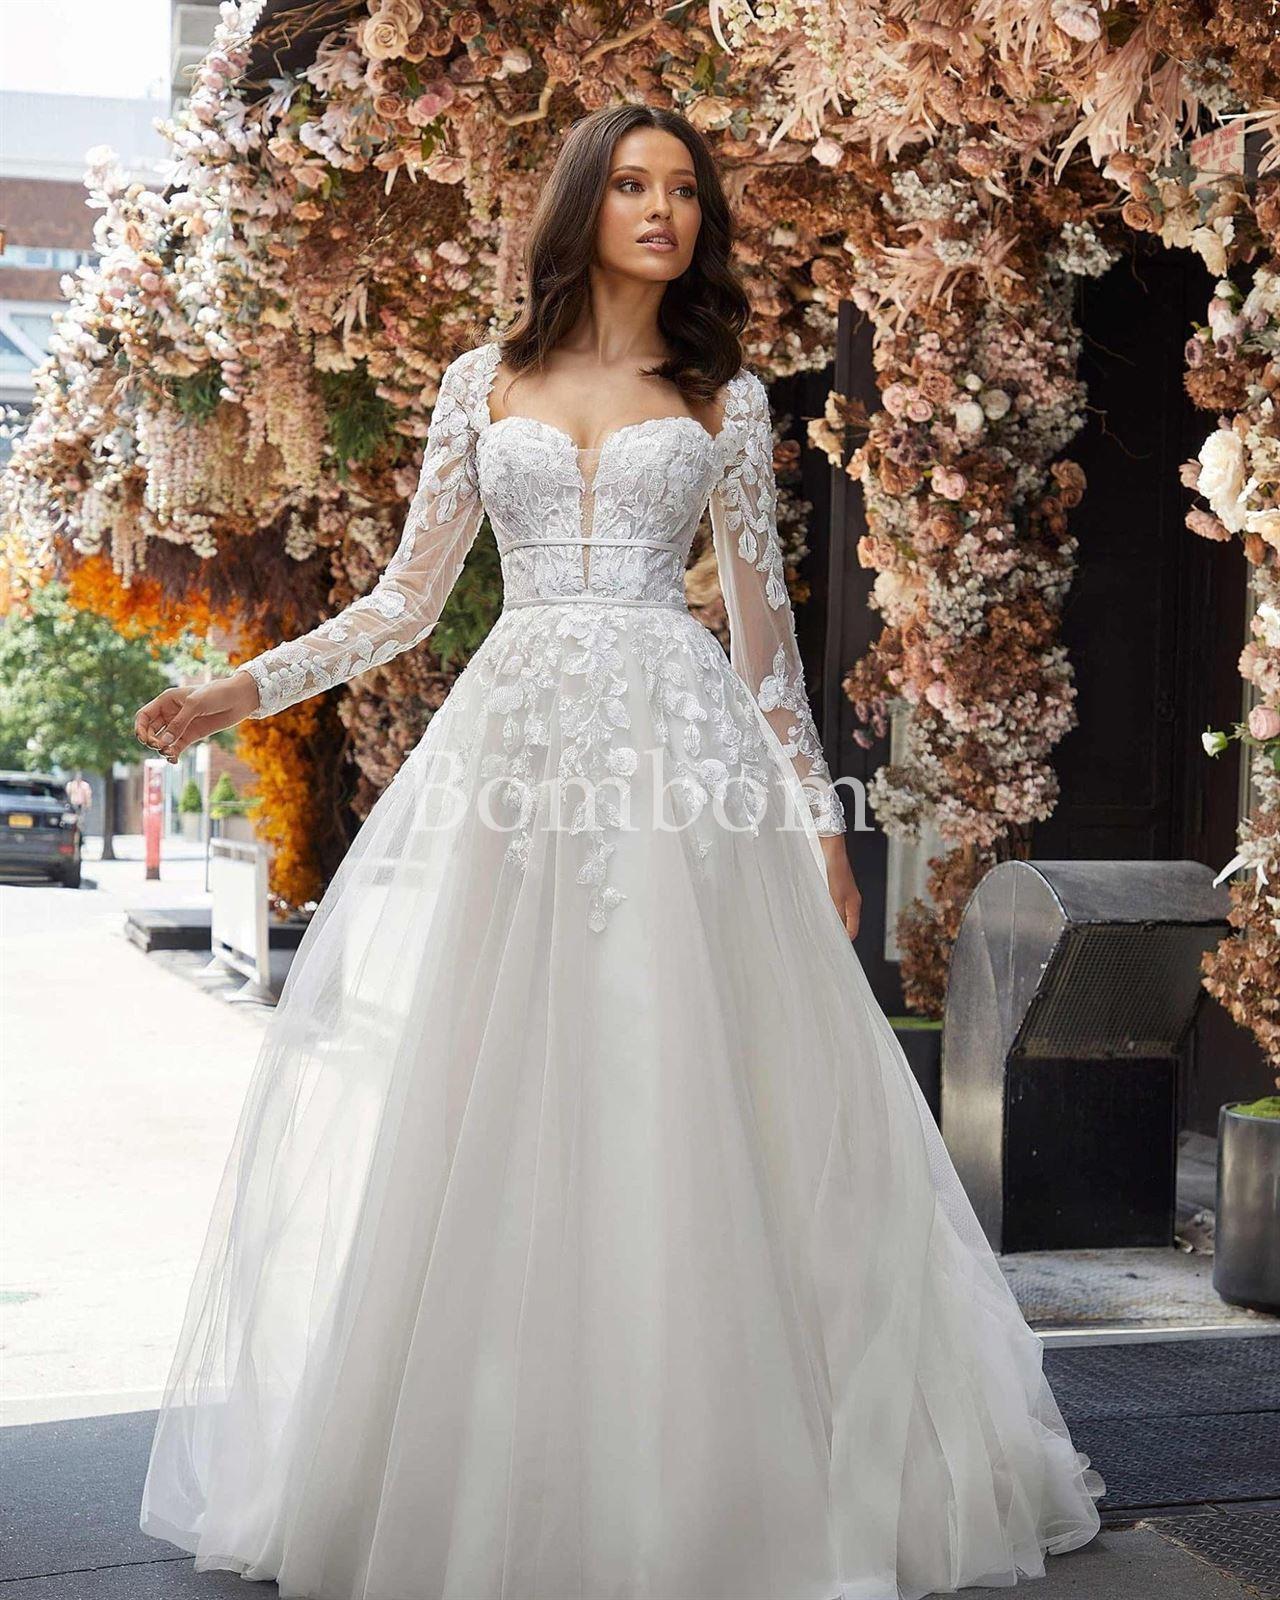 Vestido de novia Judith #morilee - Imagen 3